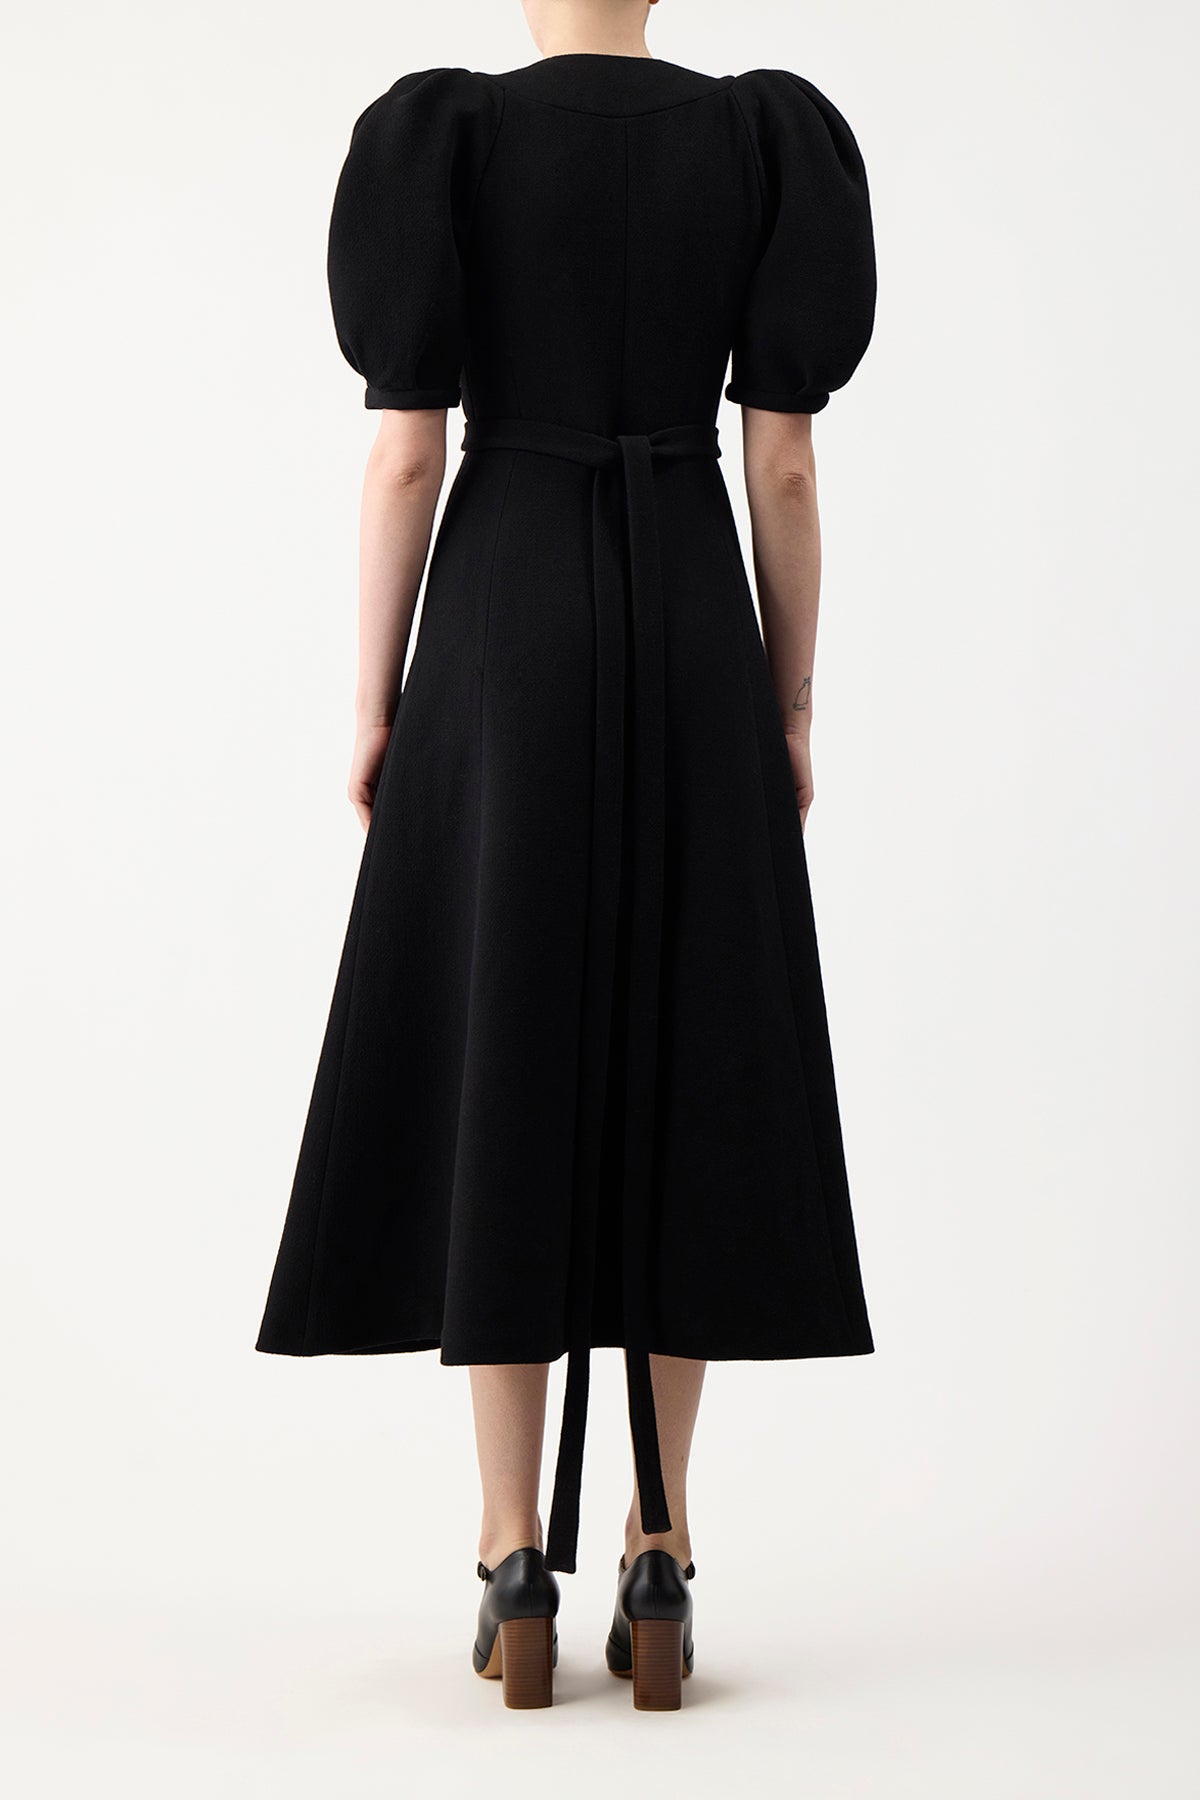 Luz Dress in Black Virgin Wool